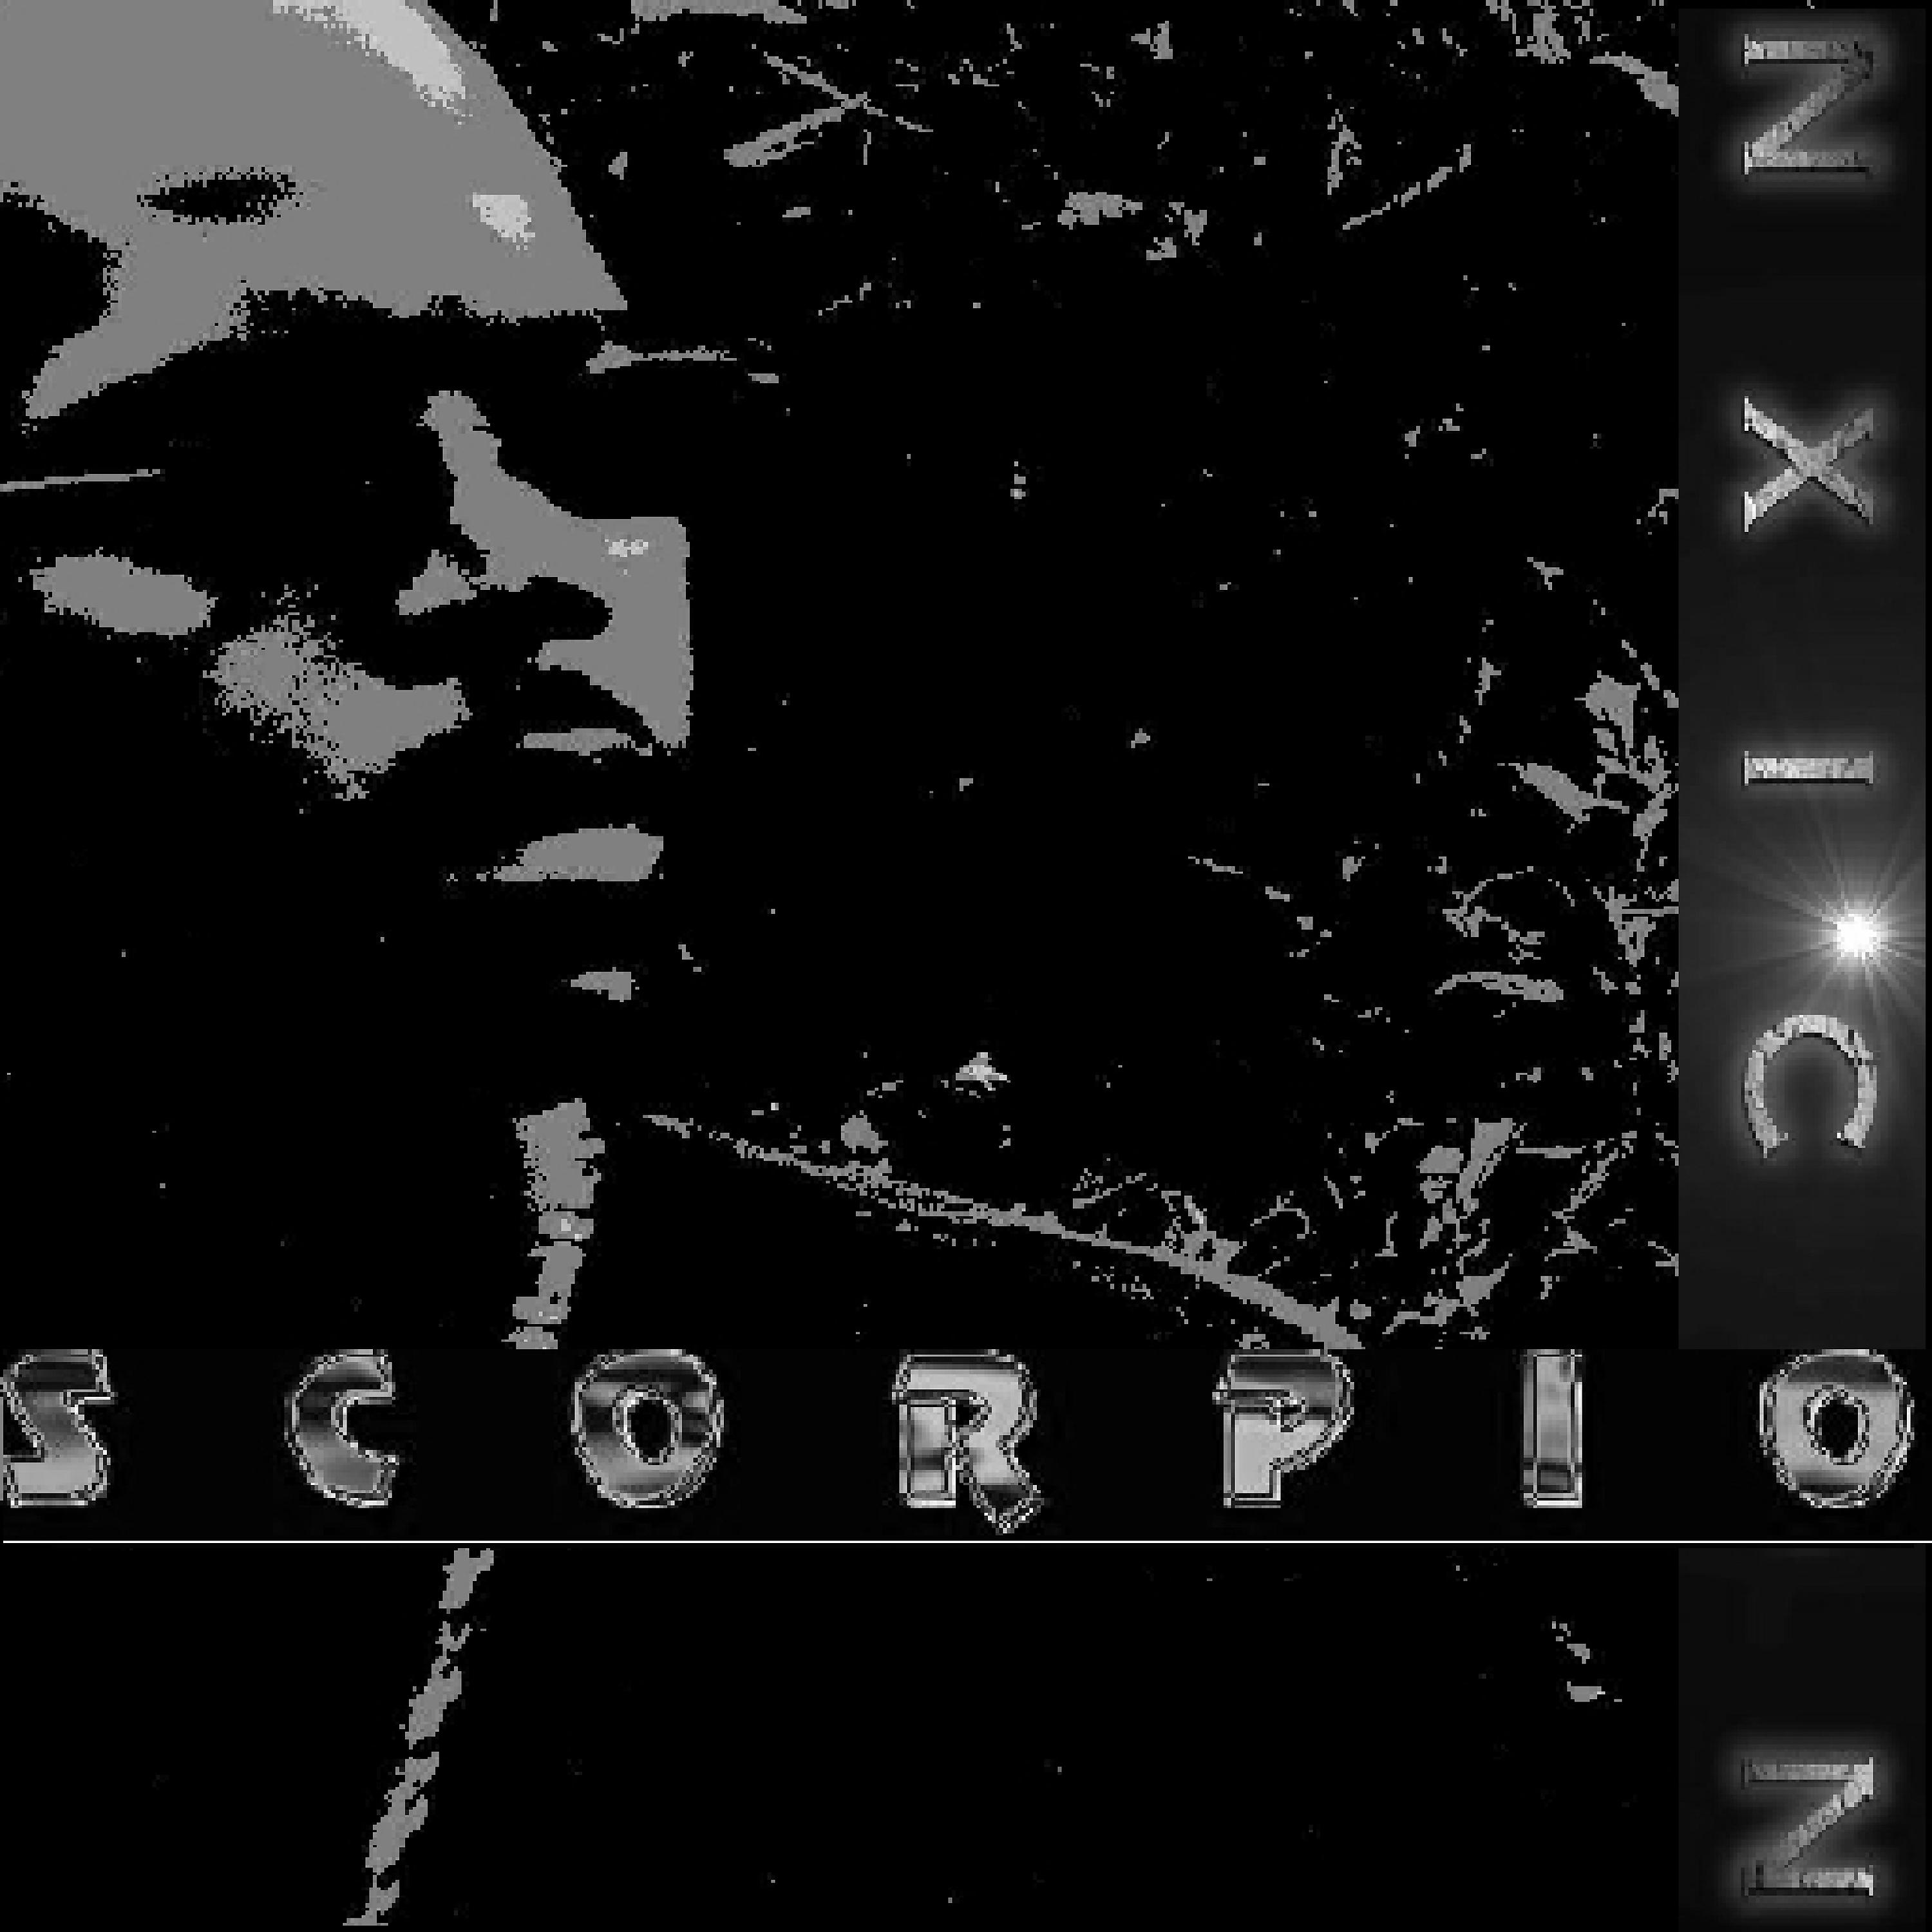 Постер альбома Scorpio